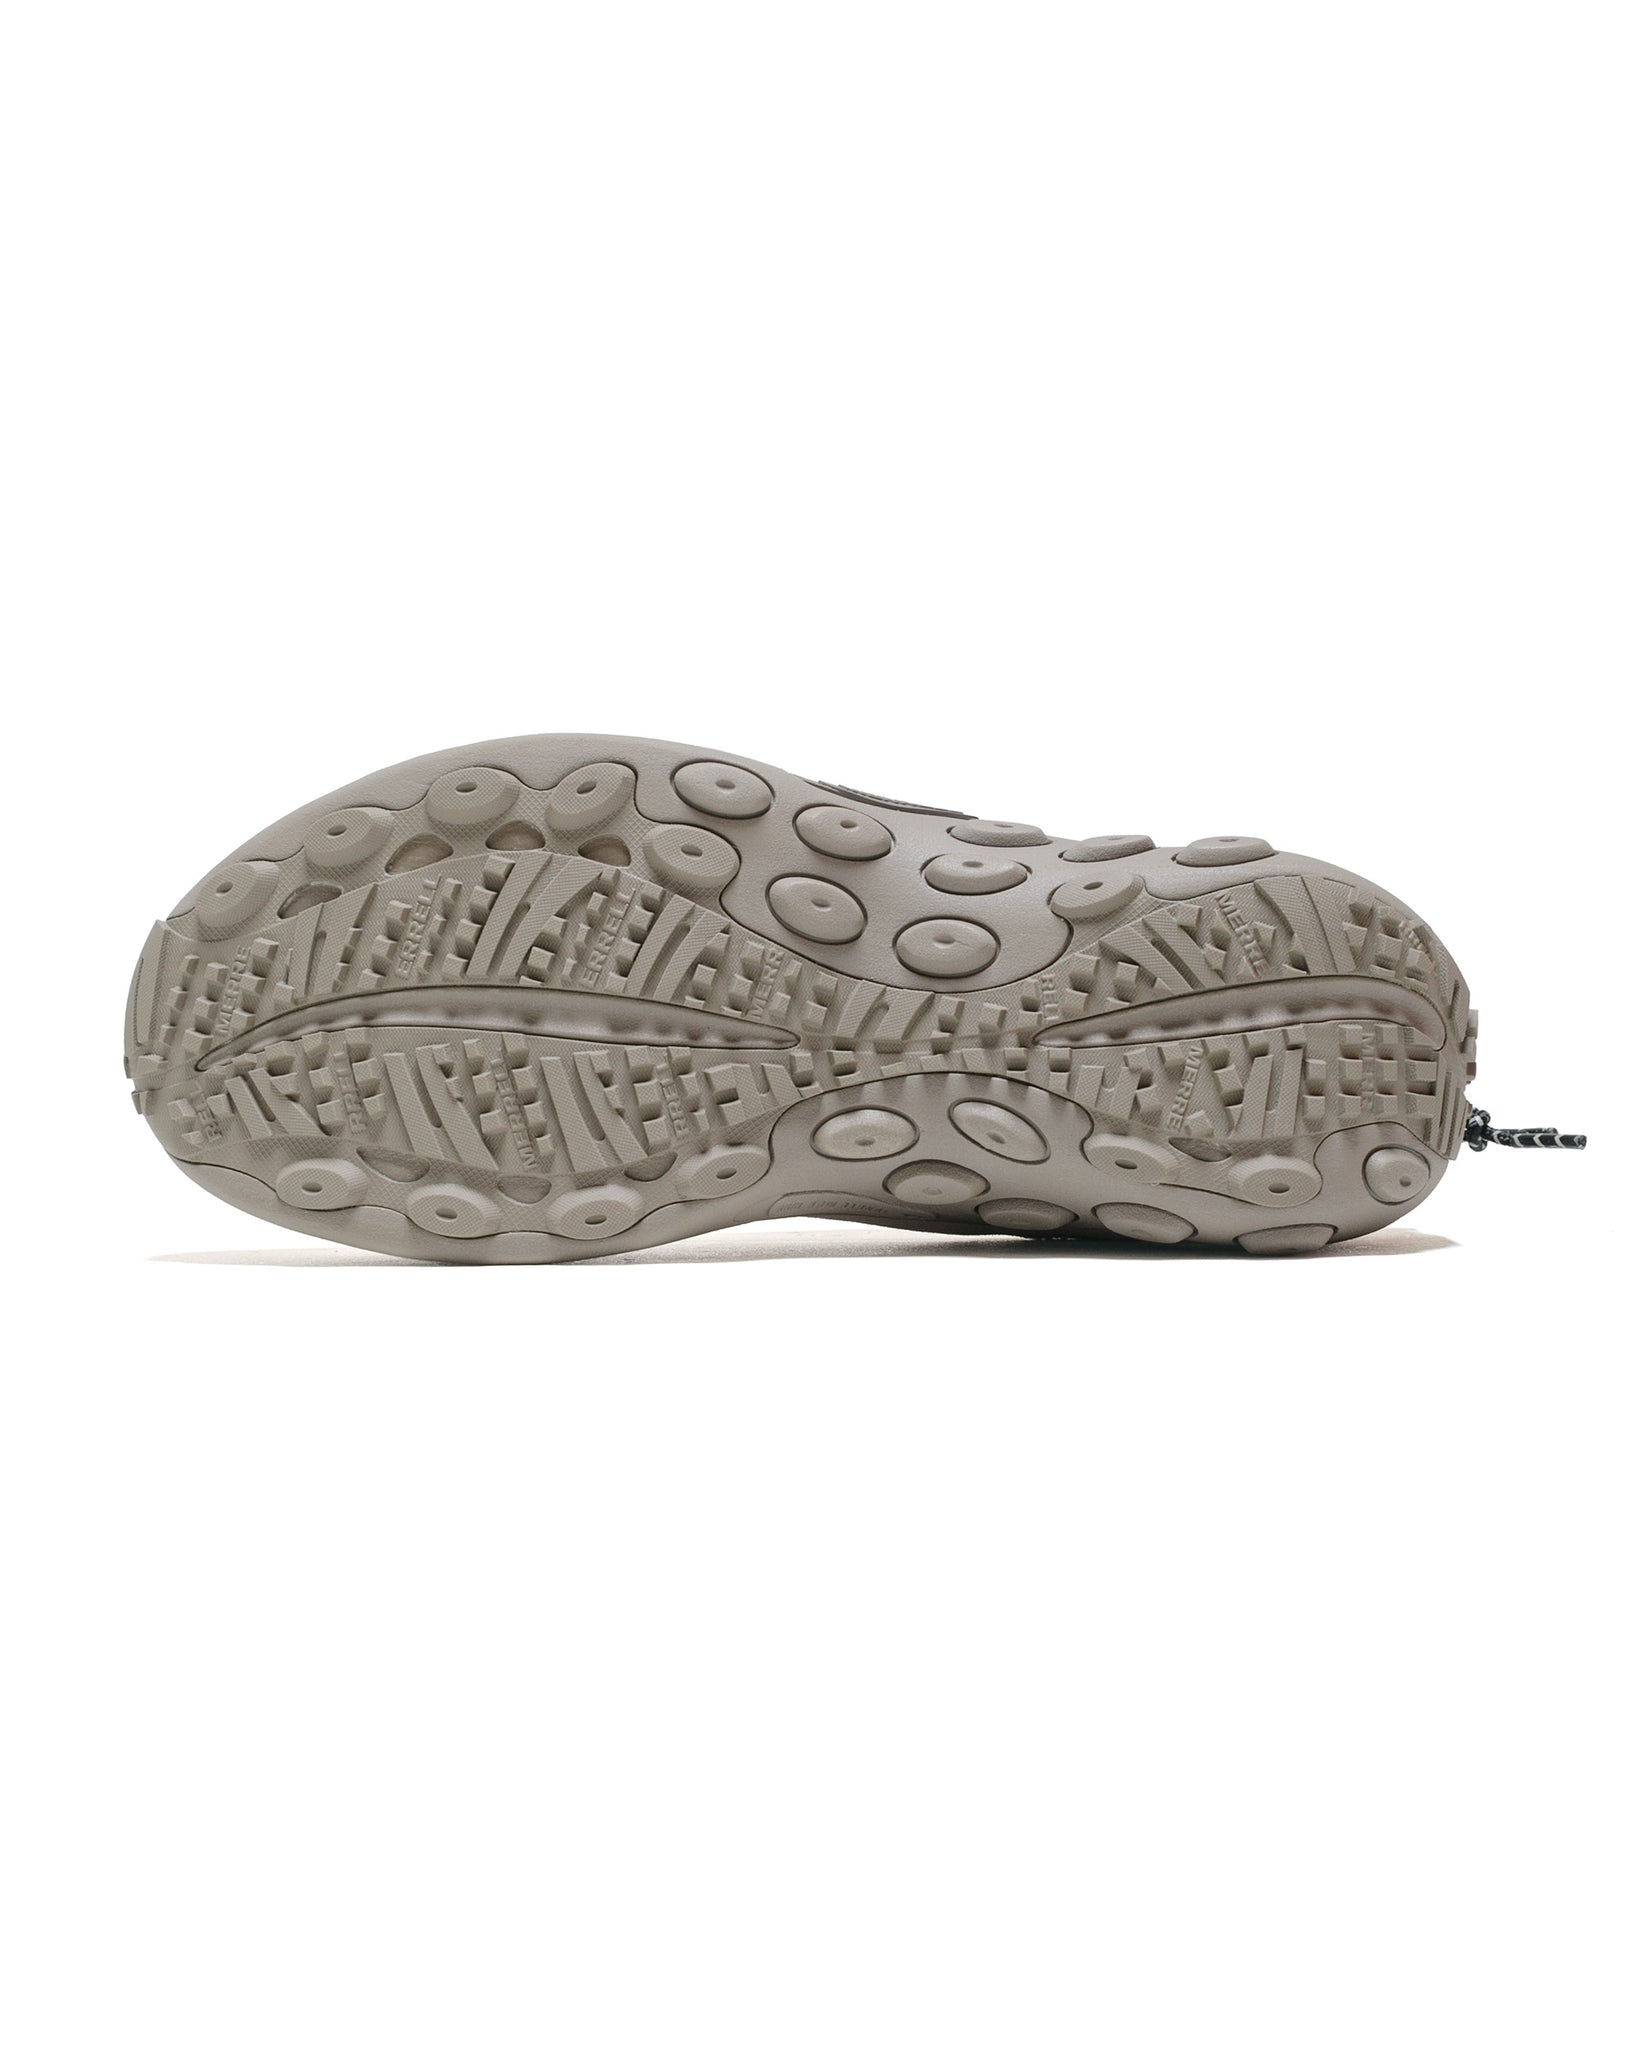 Merrell Jungle Moc Evo Woven 1TRL Parchment sole